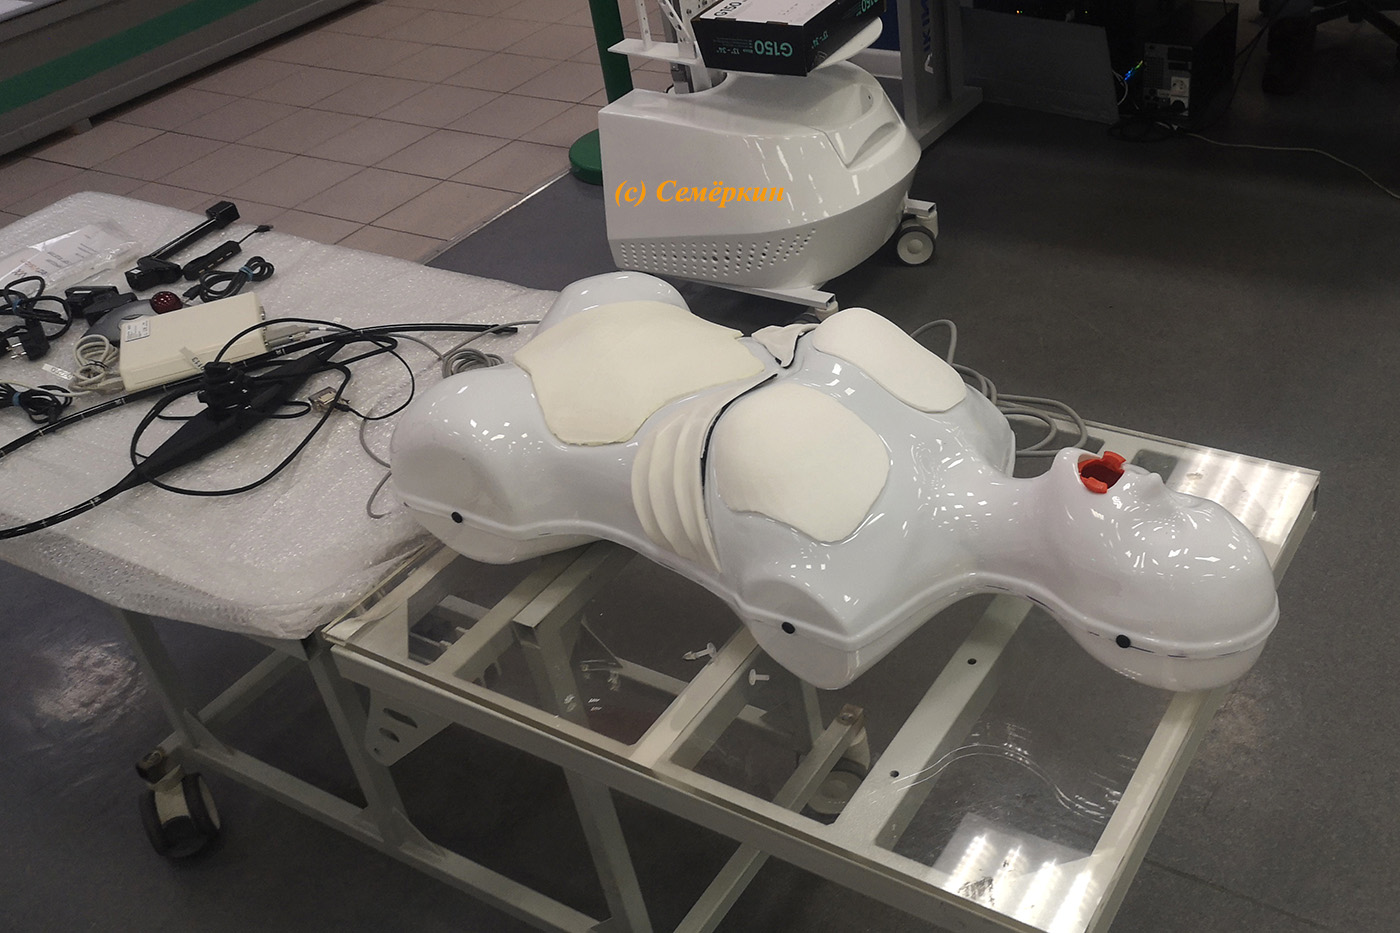 роботы-пациенты казанской компании Эйдос, на которых врачи учатся оказывать первую помощь и делать анестезию, а также виртуальные симуляторы для отработки хирургических вмешательств